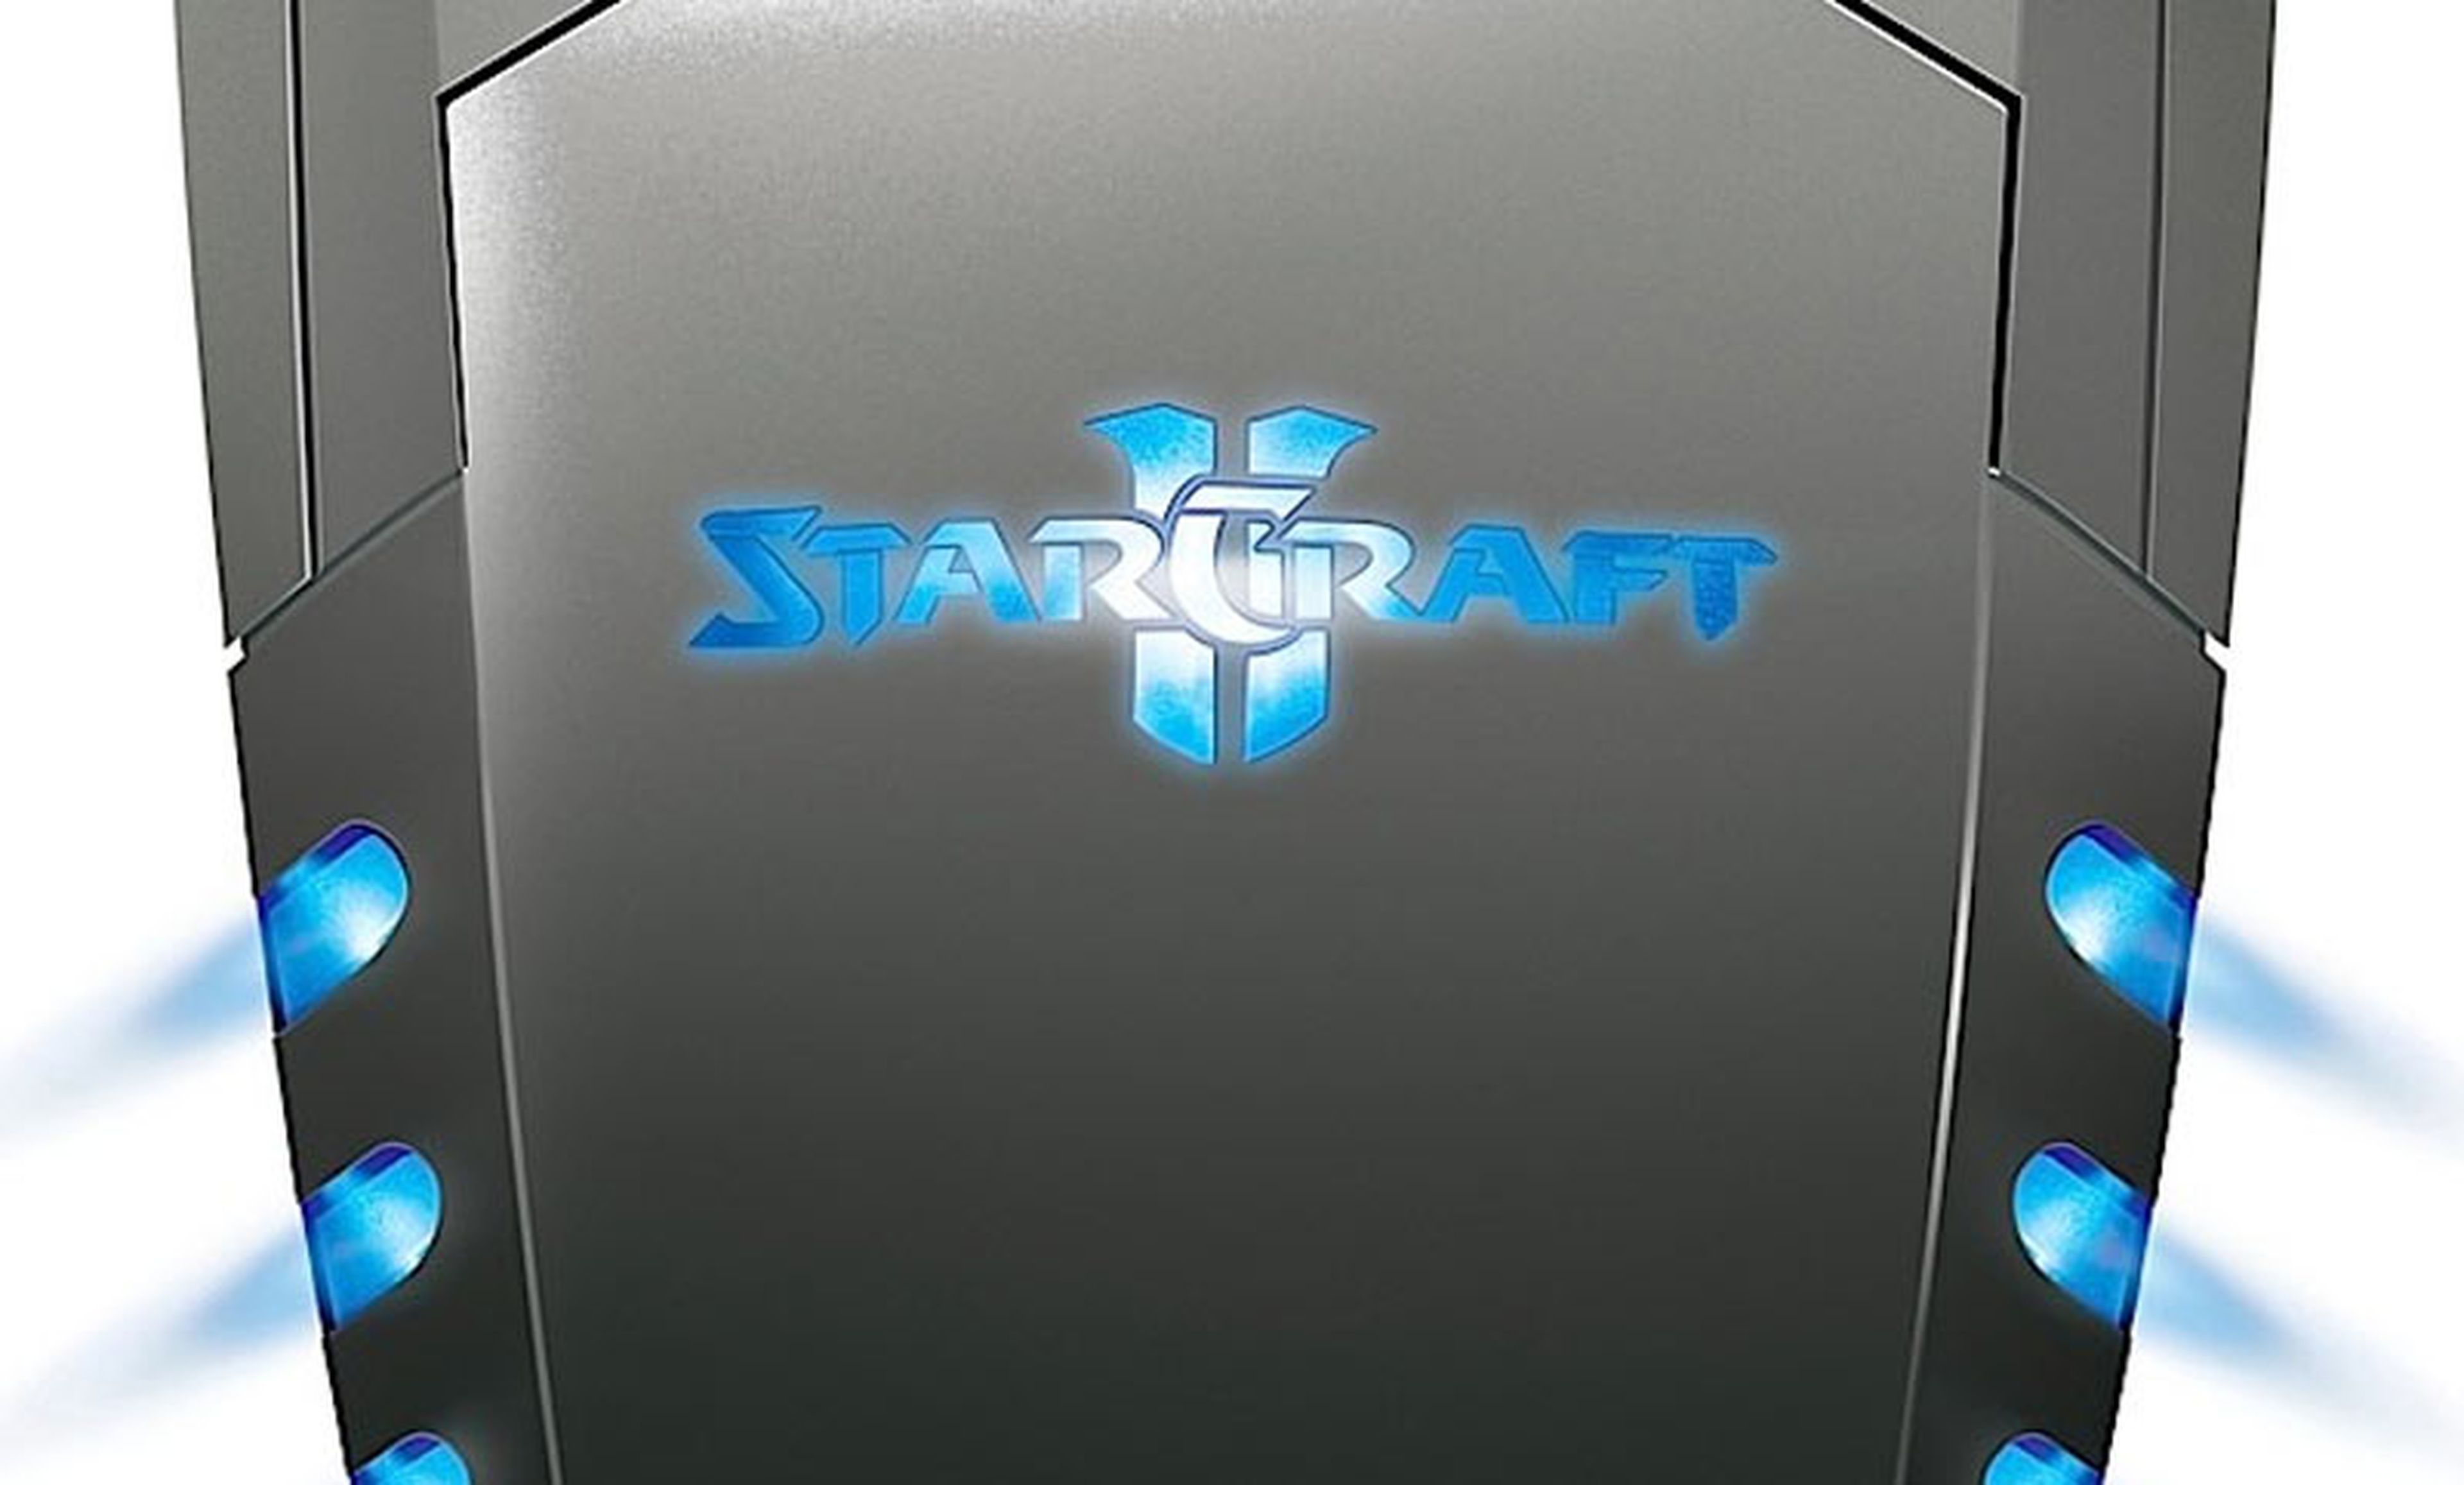 Los periféricos de StarCraft II